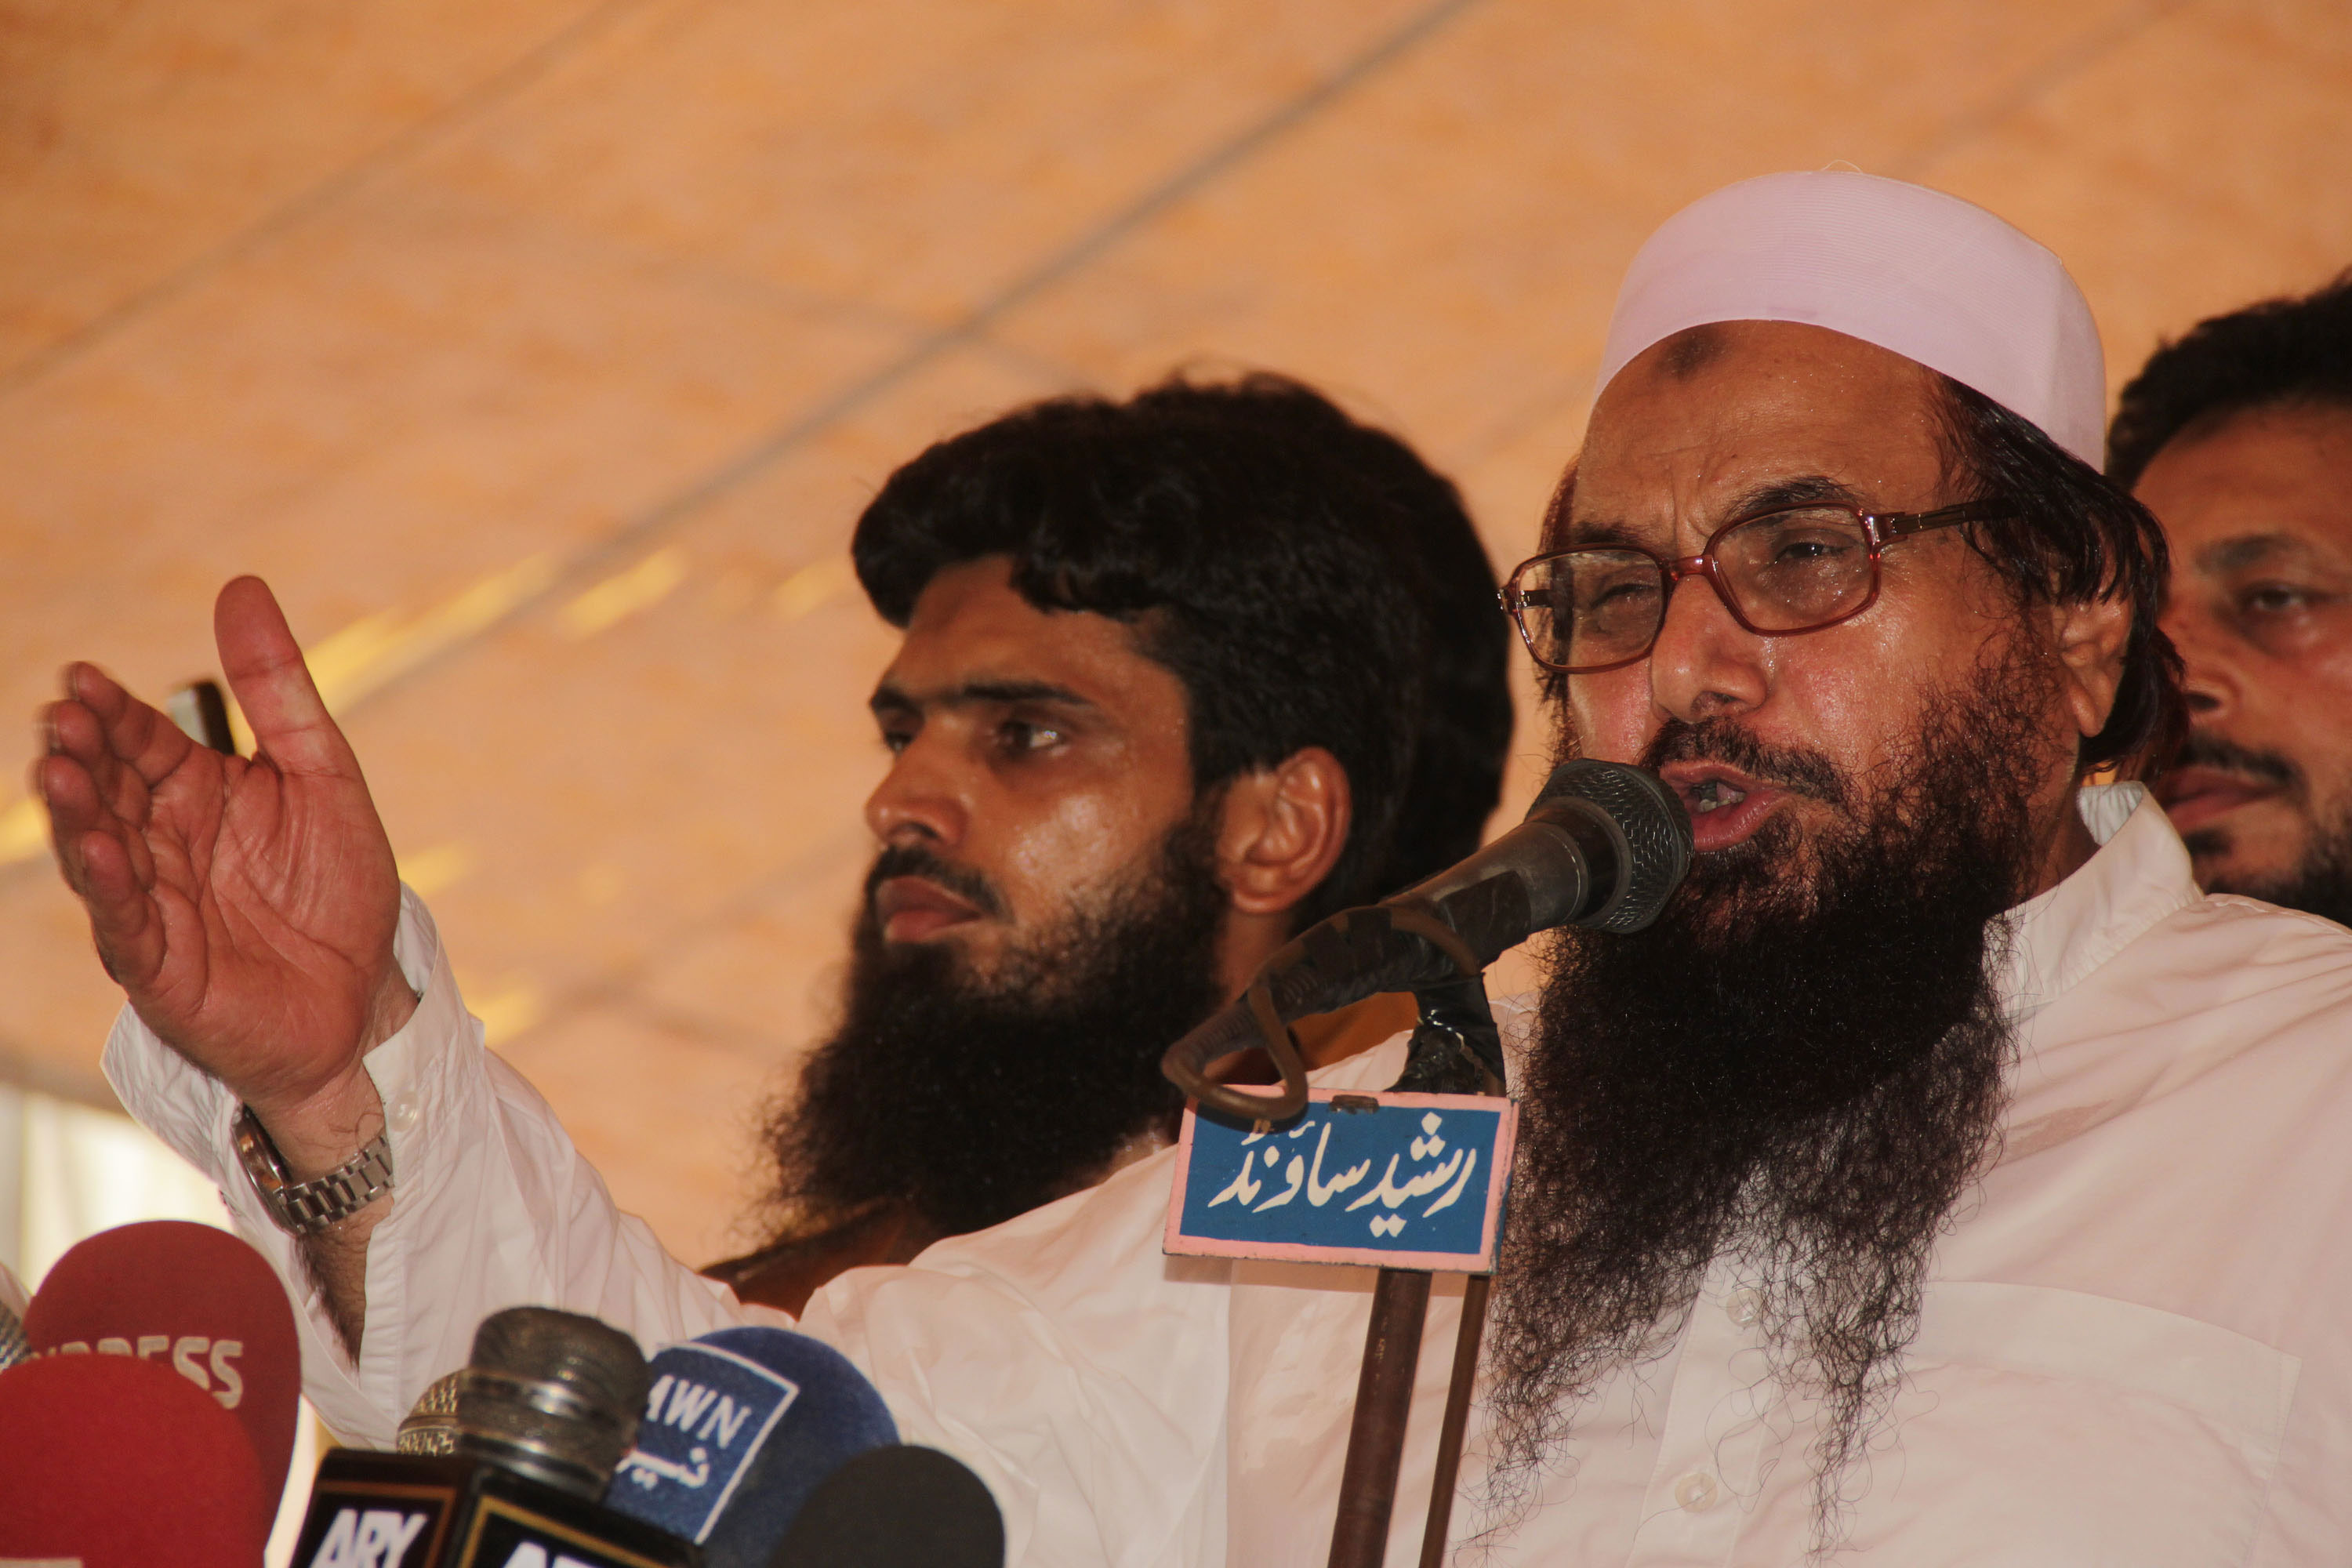 Hafiz Mohammad Saeed, founder of the Lashkar-e-Taiba Islamist group, helped orchestrate the 2012 Mumbai terror attacks. (Photo: Rana Sajid Hussain/Sipa USA/Newscom )